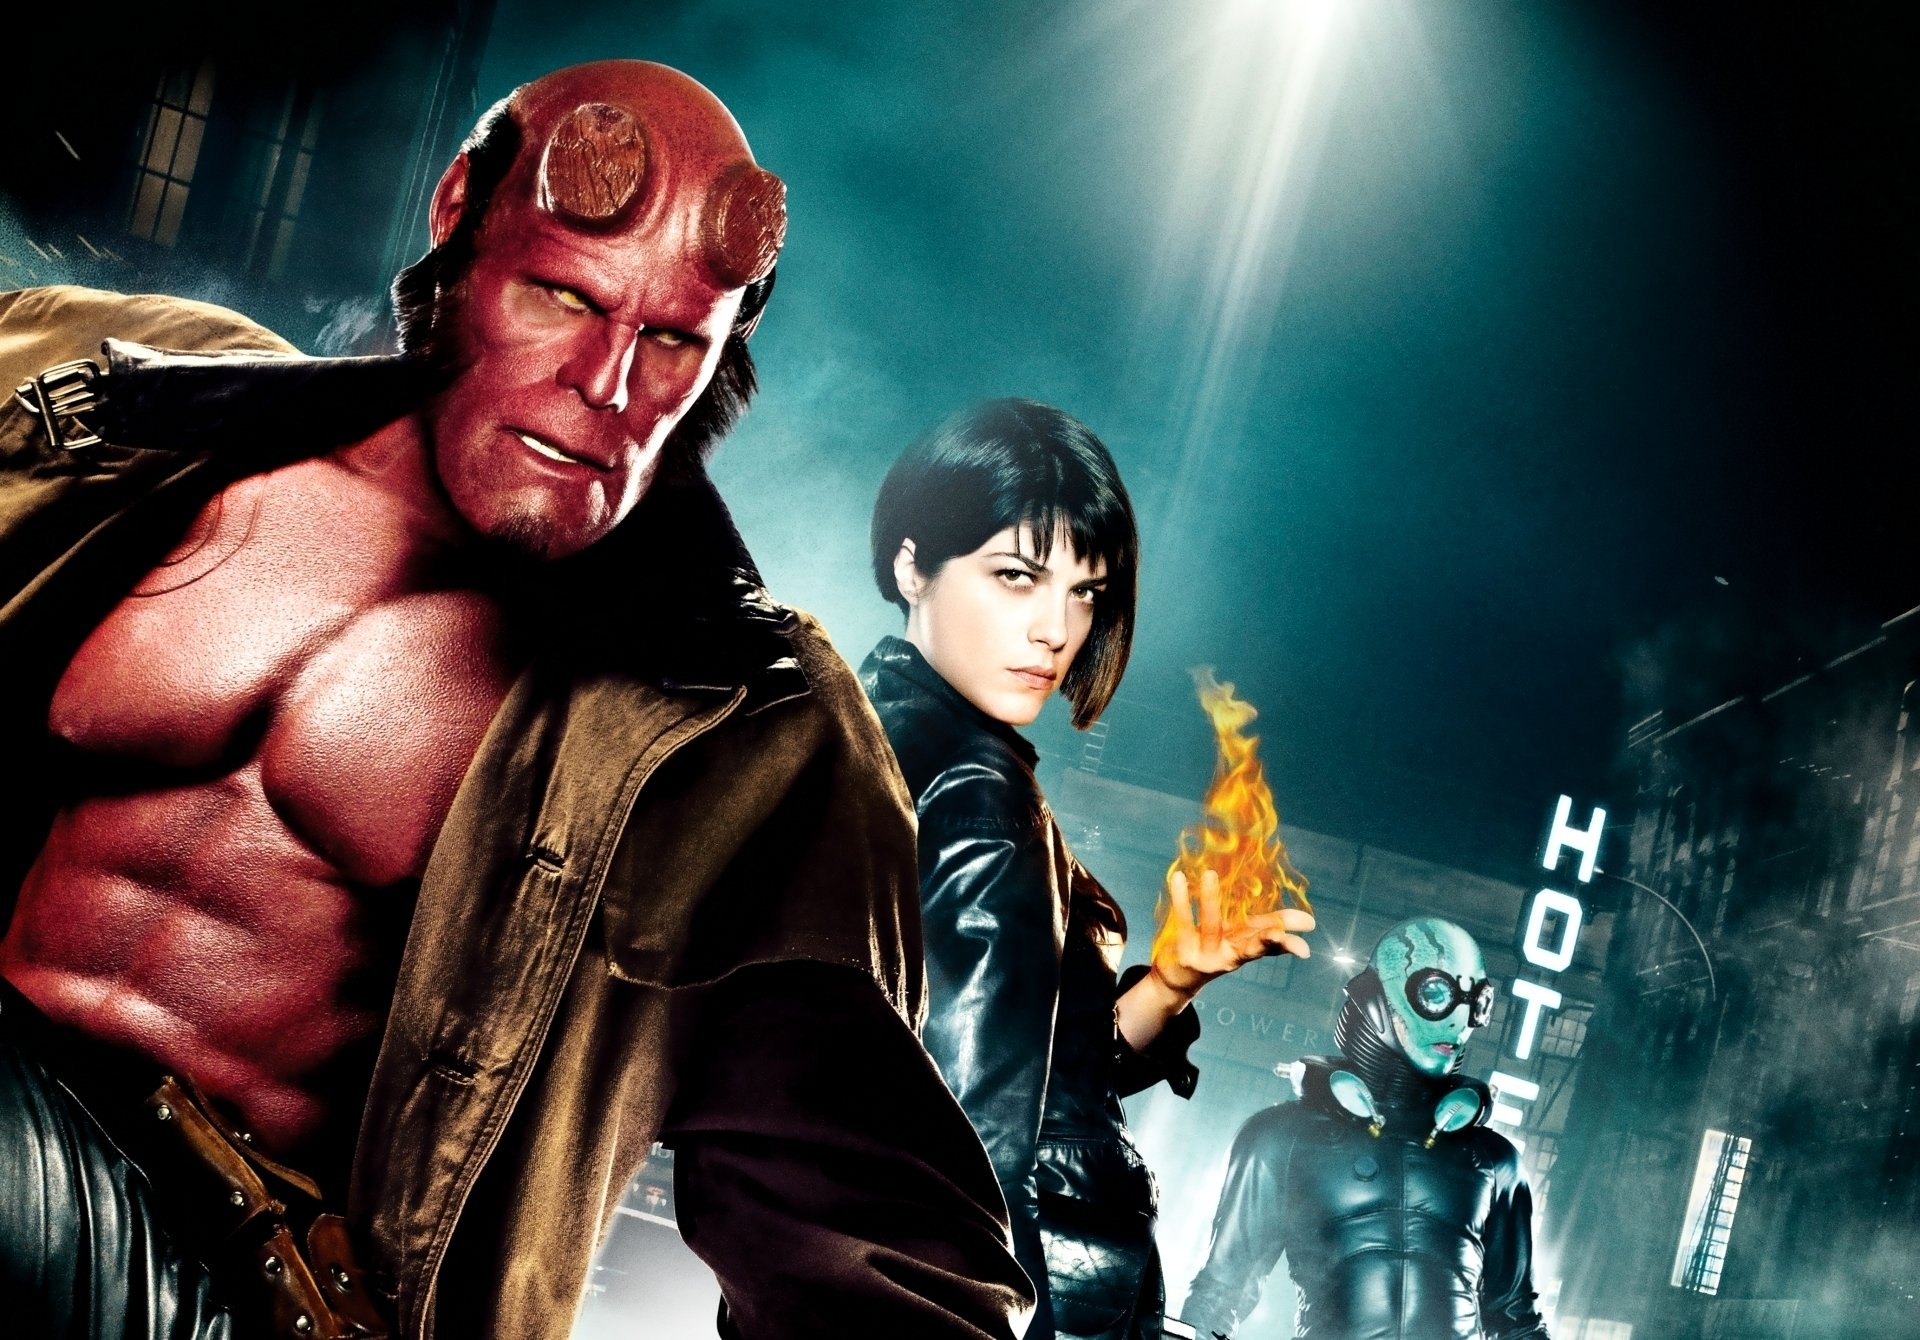 Hellboy Movie Wallpapers